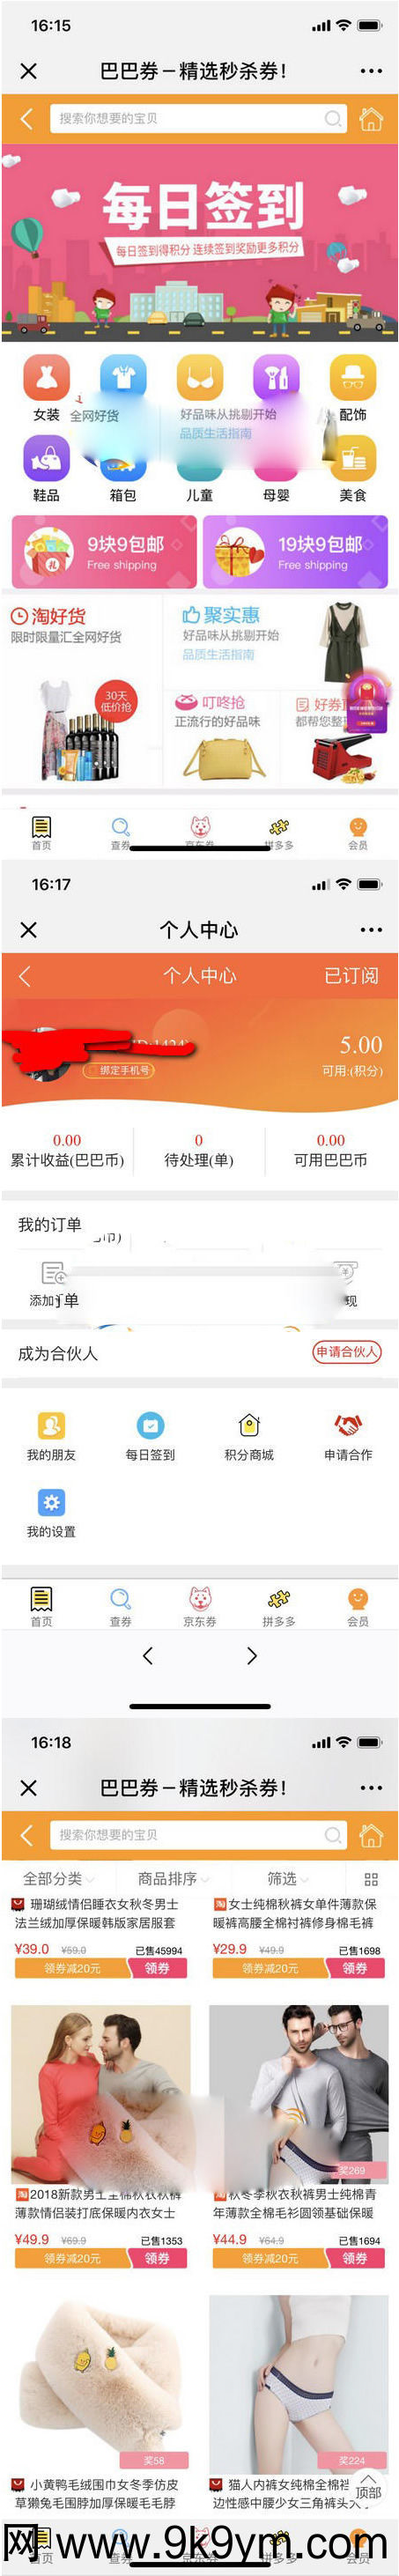 老虎微信淘宝客 6.0.85最新版公众号版完整源码包